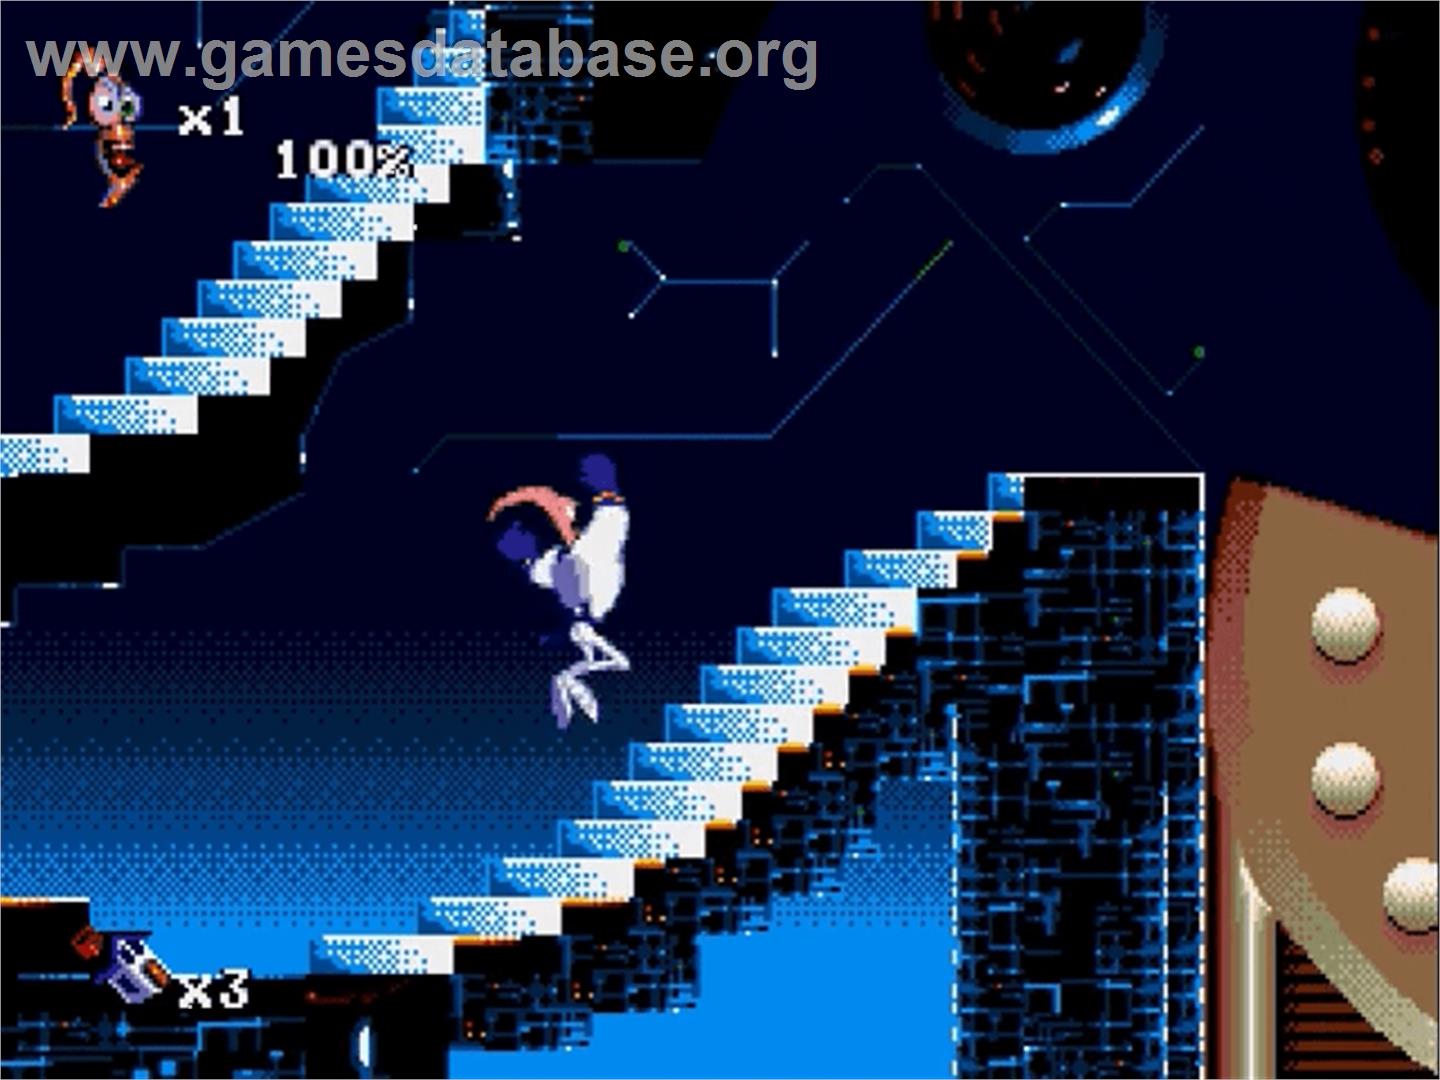 Earthworm Jim 2 - Sega Genesis - Artwork - In Game